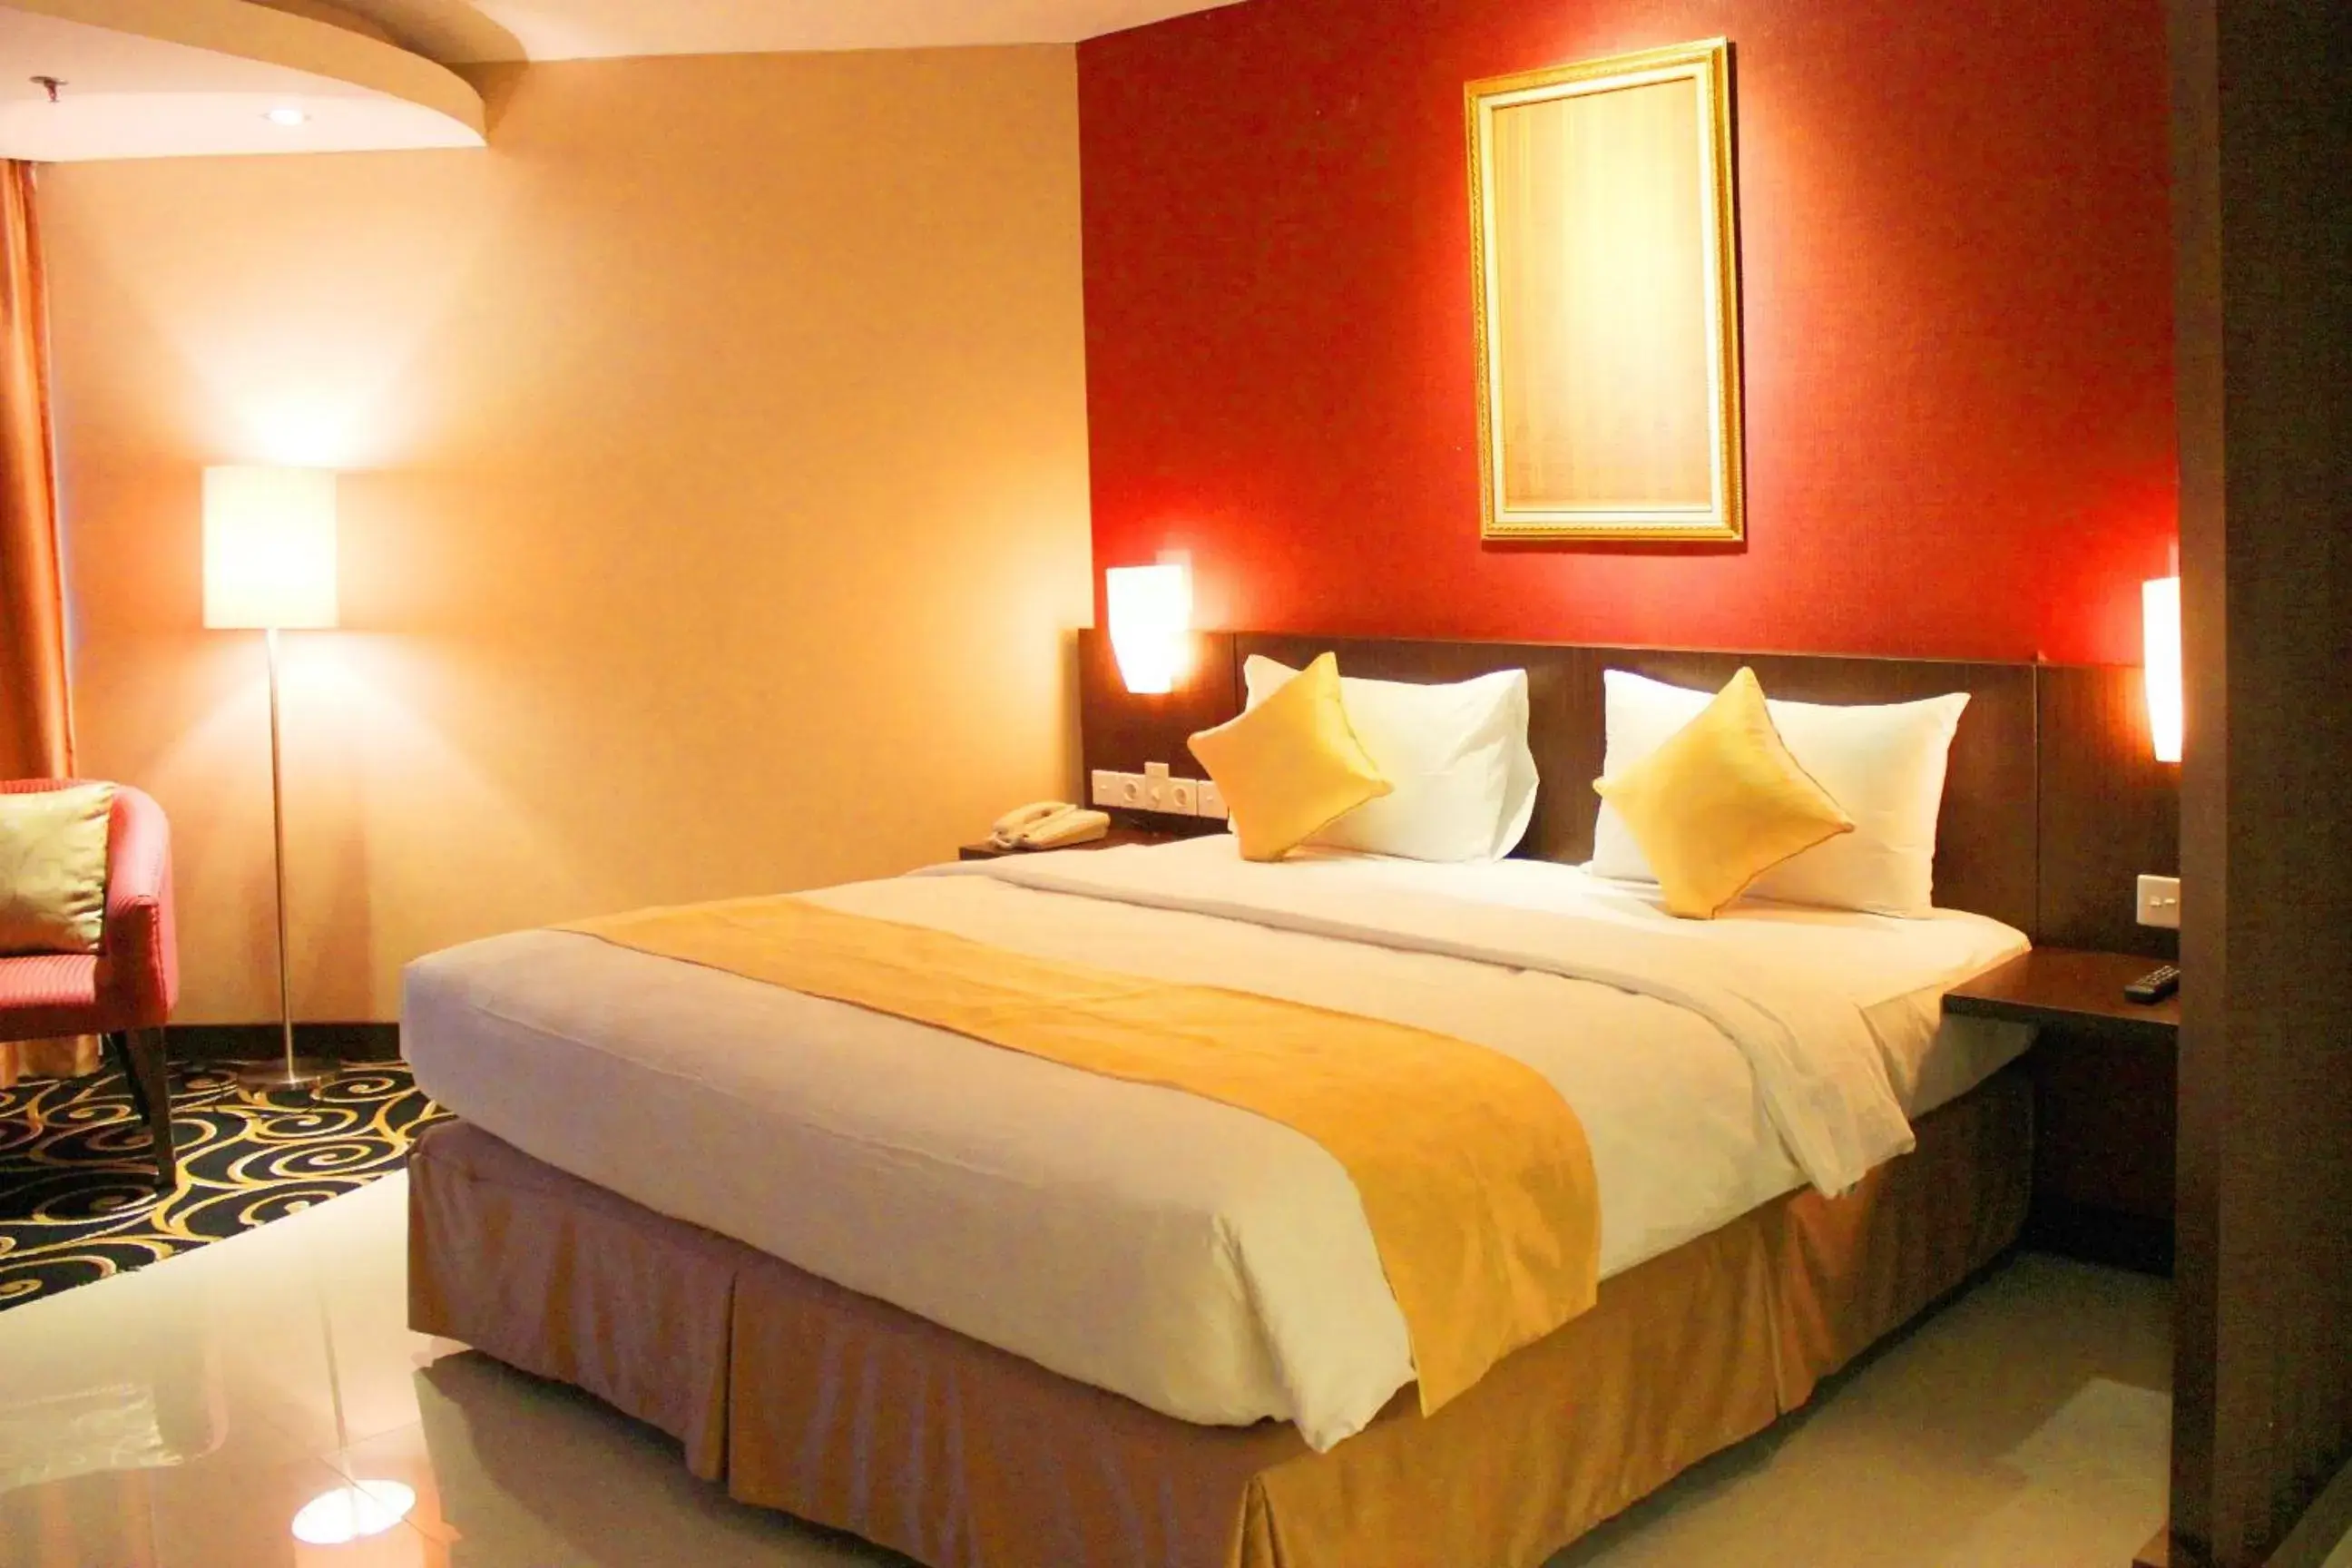 Bed in Balairung Hotel Jakarta